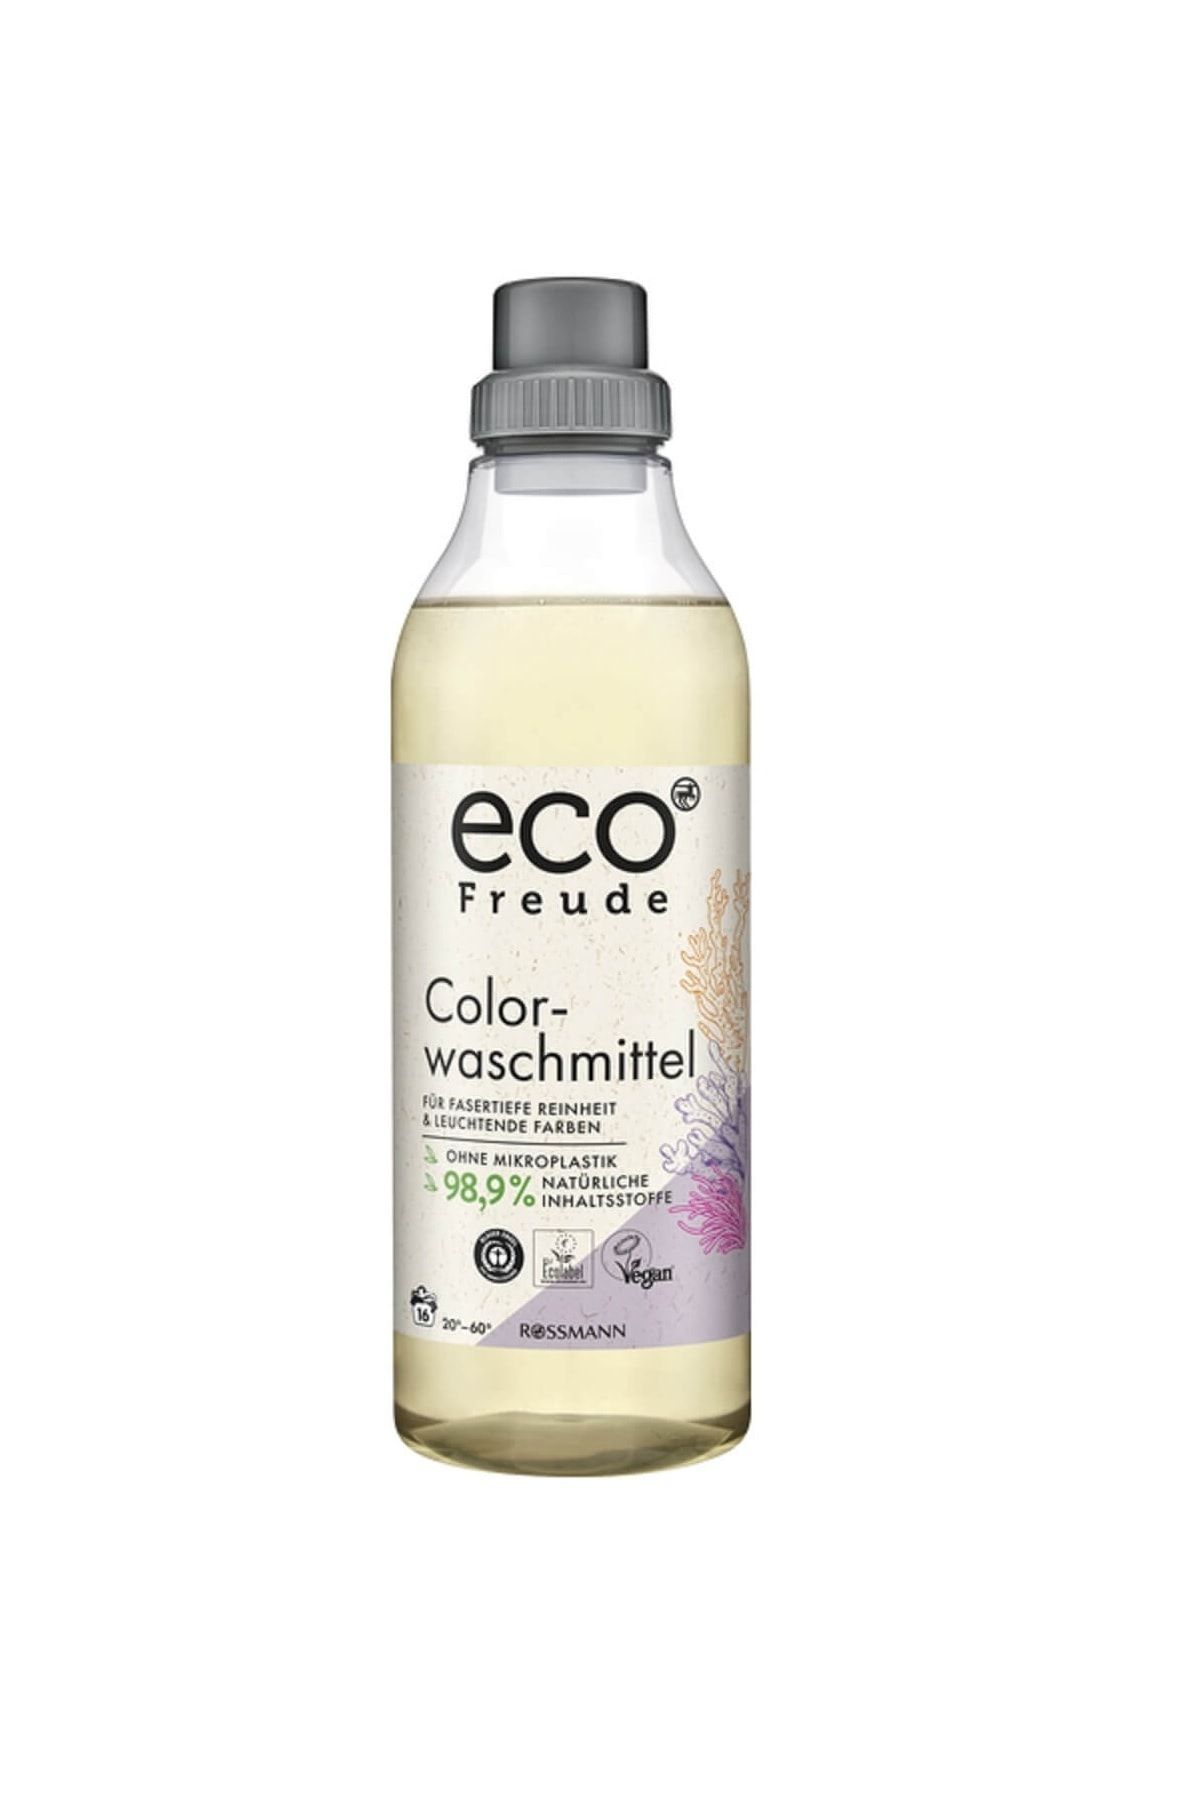 Eco Freude Sıvı Çamaşır Deterjanı Renkliler Için 1000 ml